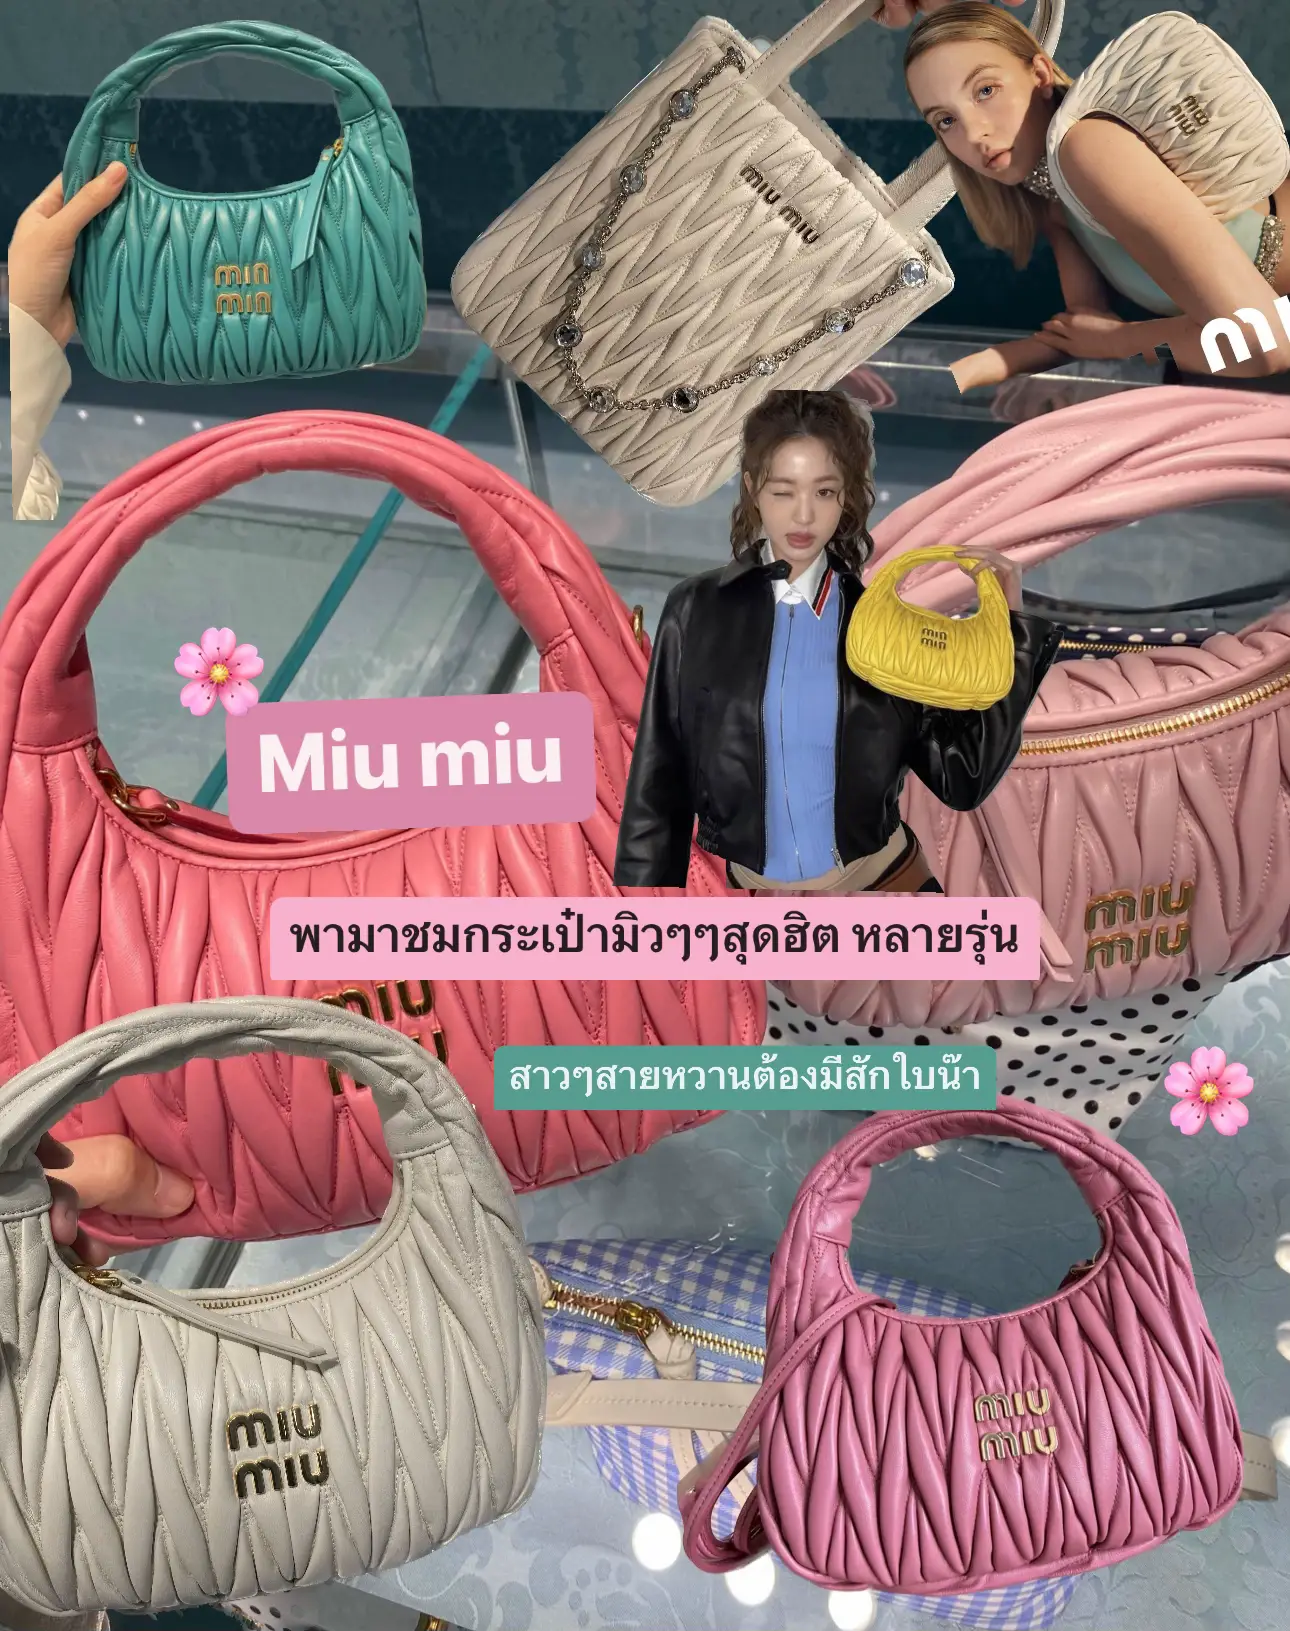 Miu bag update miu 💗🌸 | Gallery posted by Kooku | Lemon8